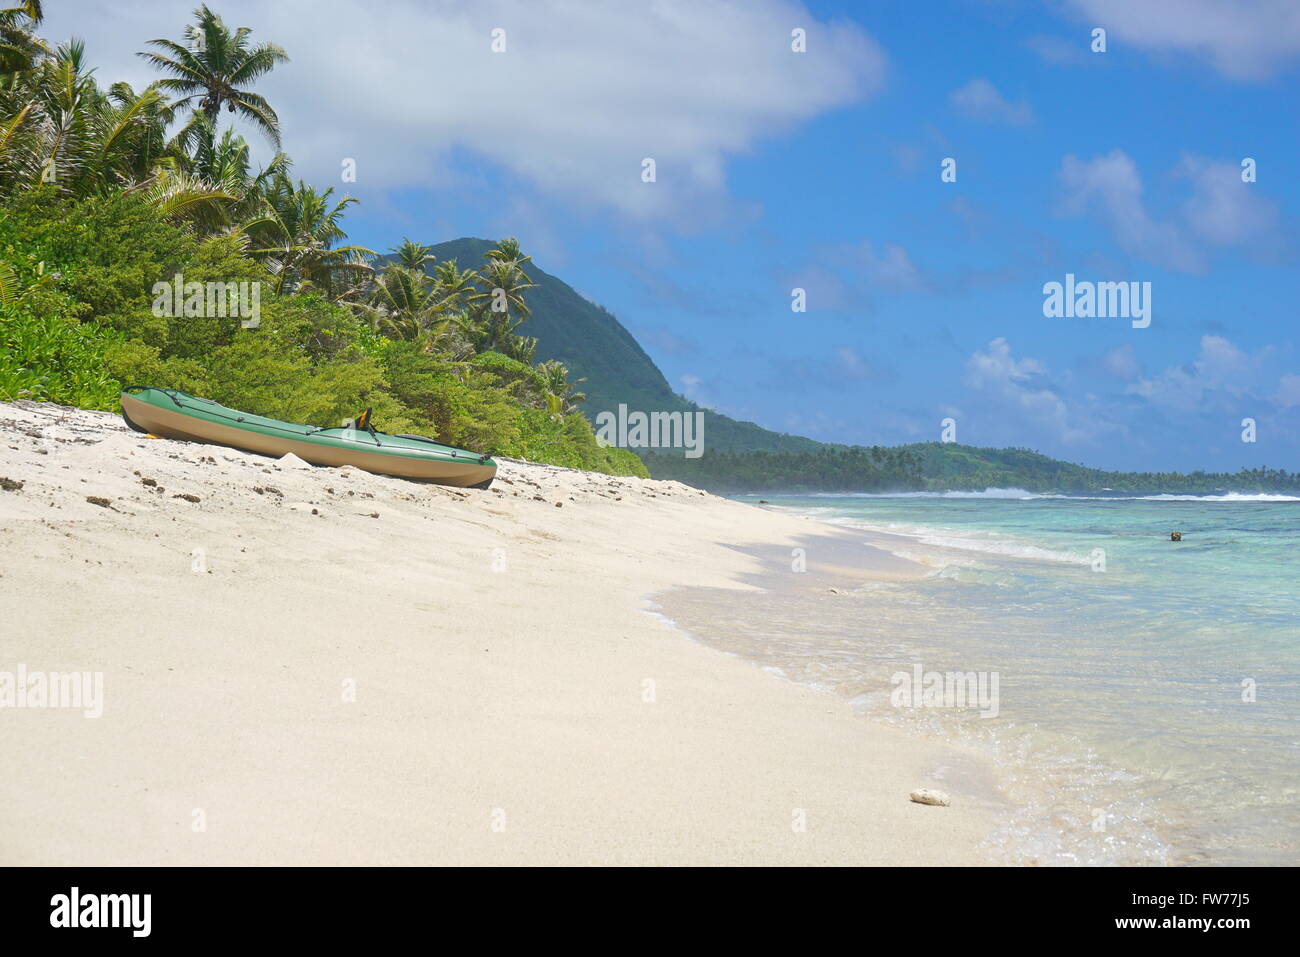 Kajak an einem unberührten Sandstrand der Insel Huahine, Pazifik, Französisch-Polynesien Stockfoto